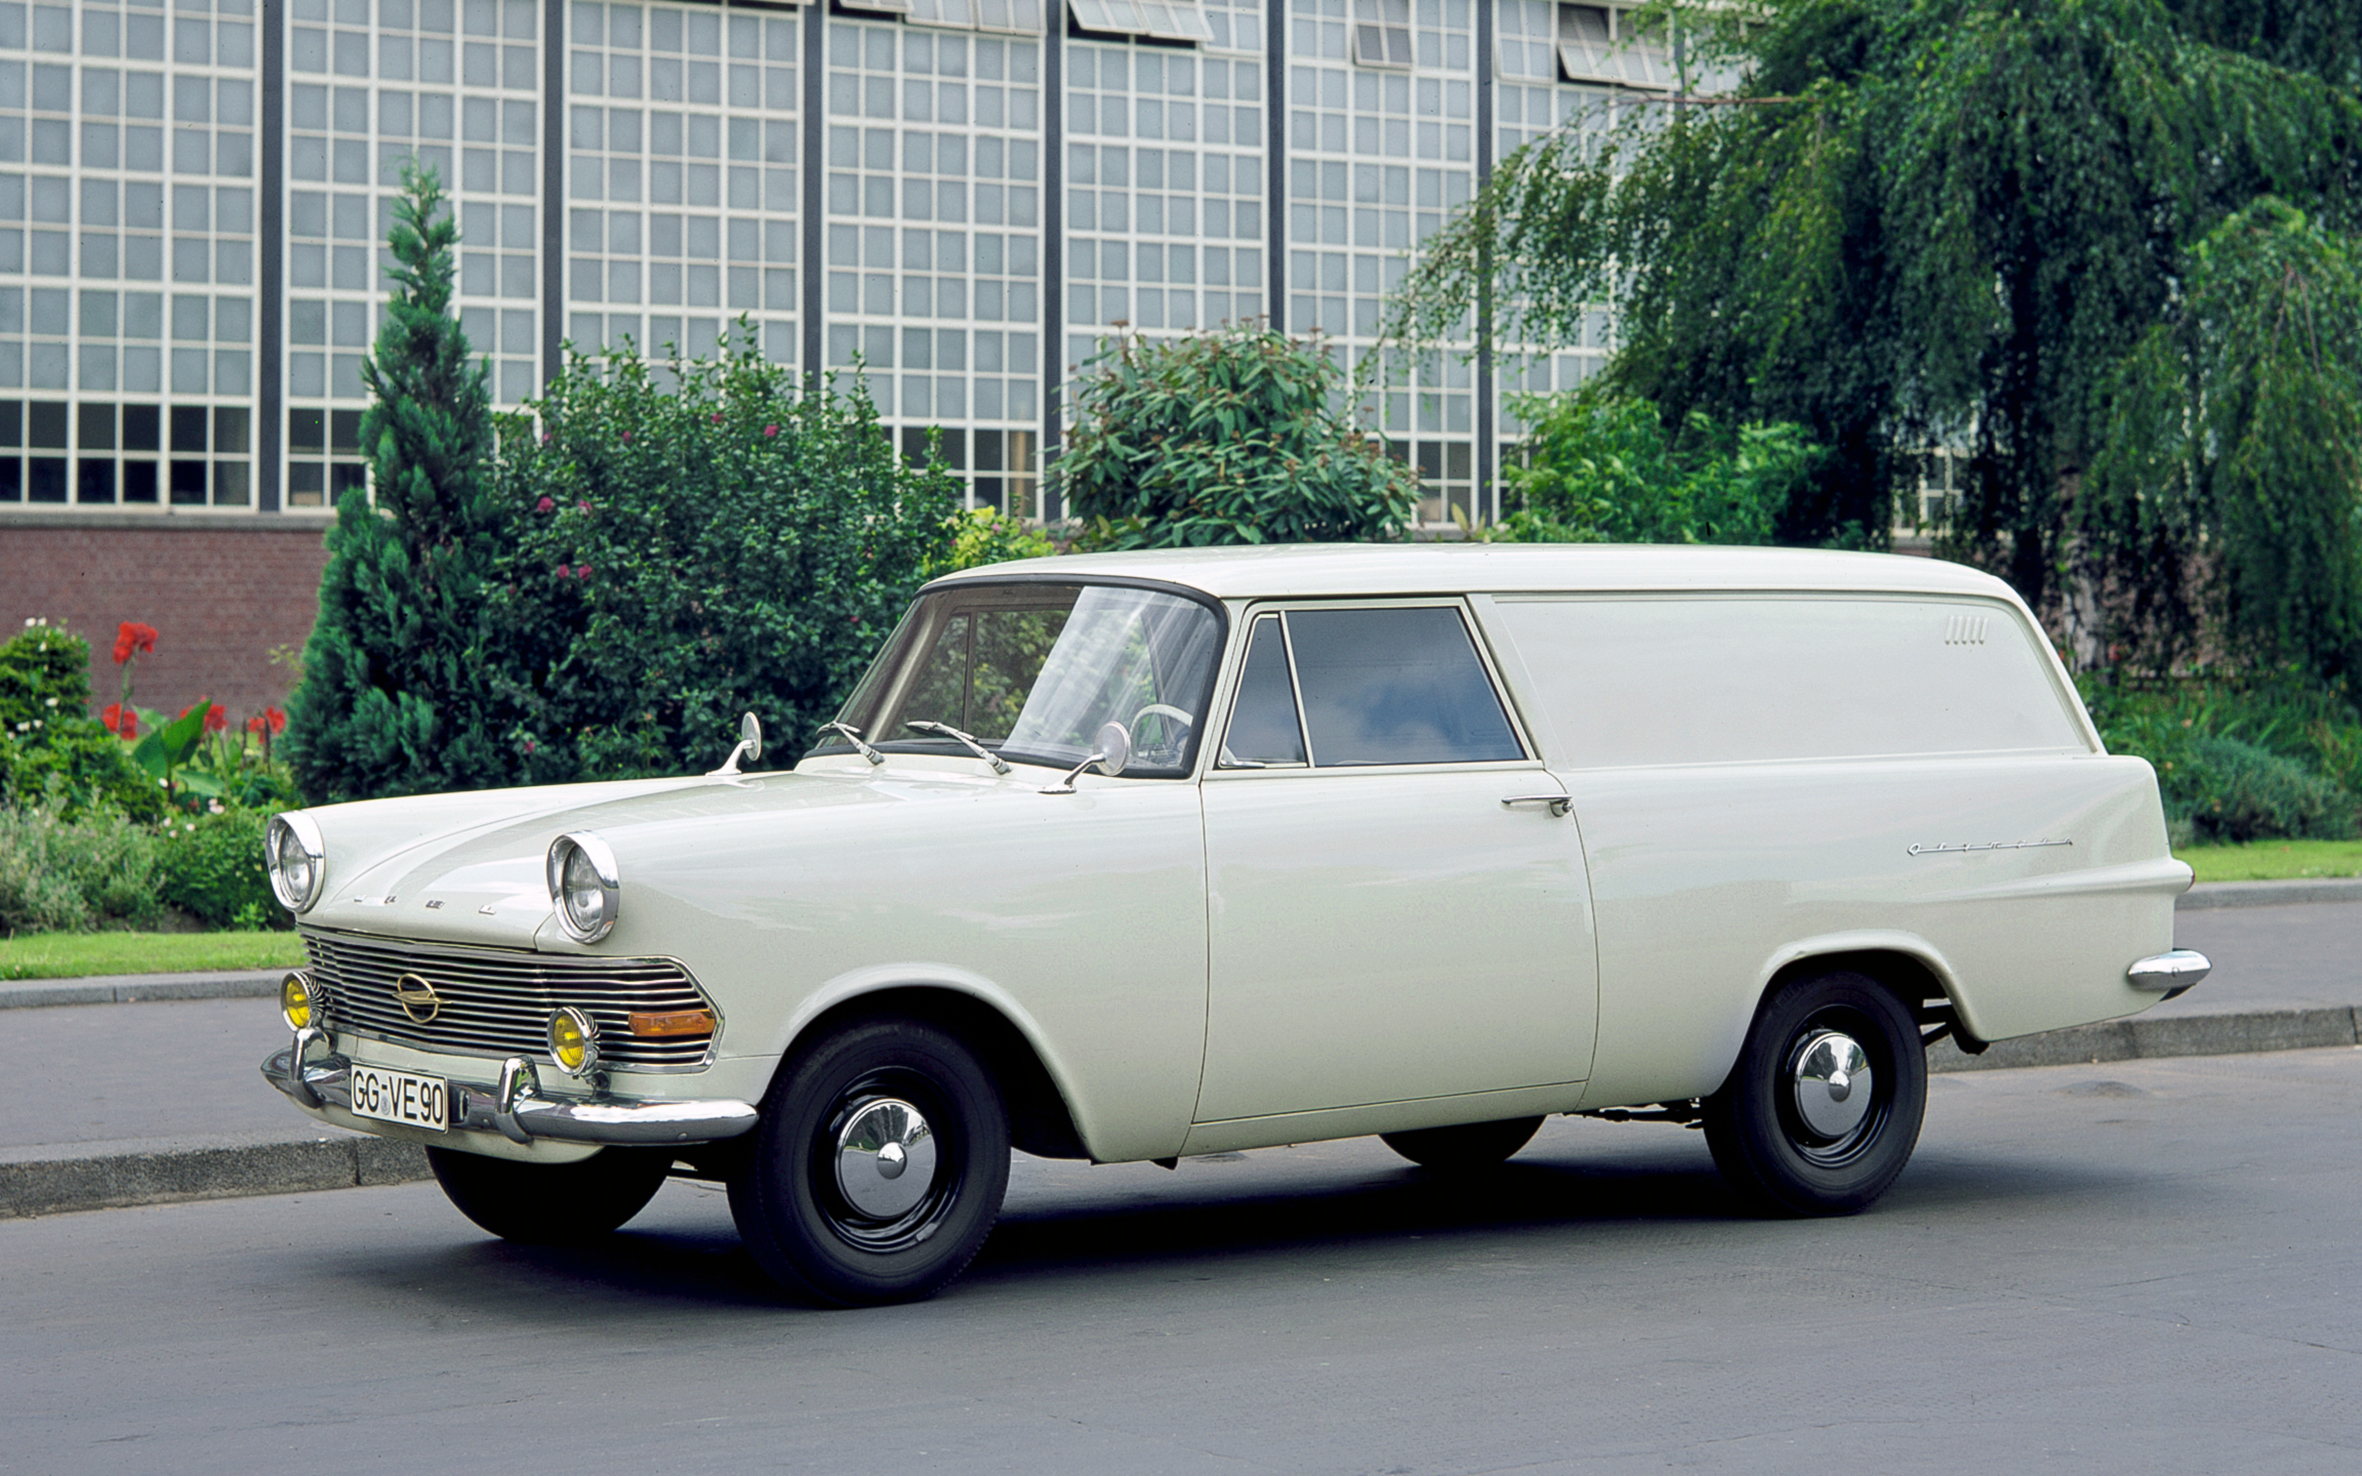 02 02 1960. Opel Rekord p2 1960. Opel Rekord p2. Opel Rekord Caravan 1963. Opel Olympia 1960.